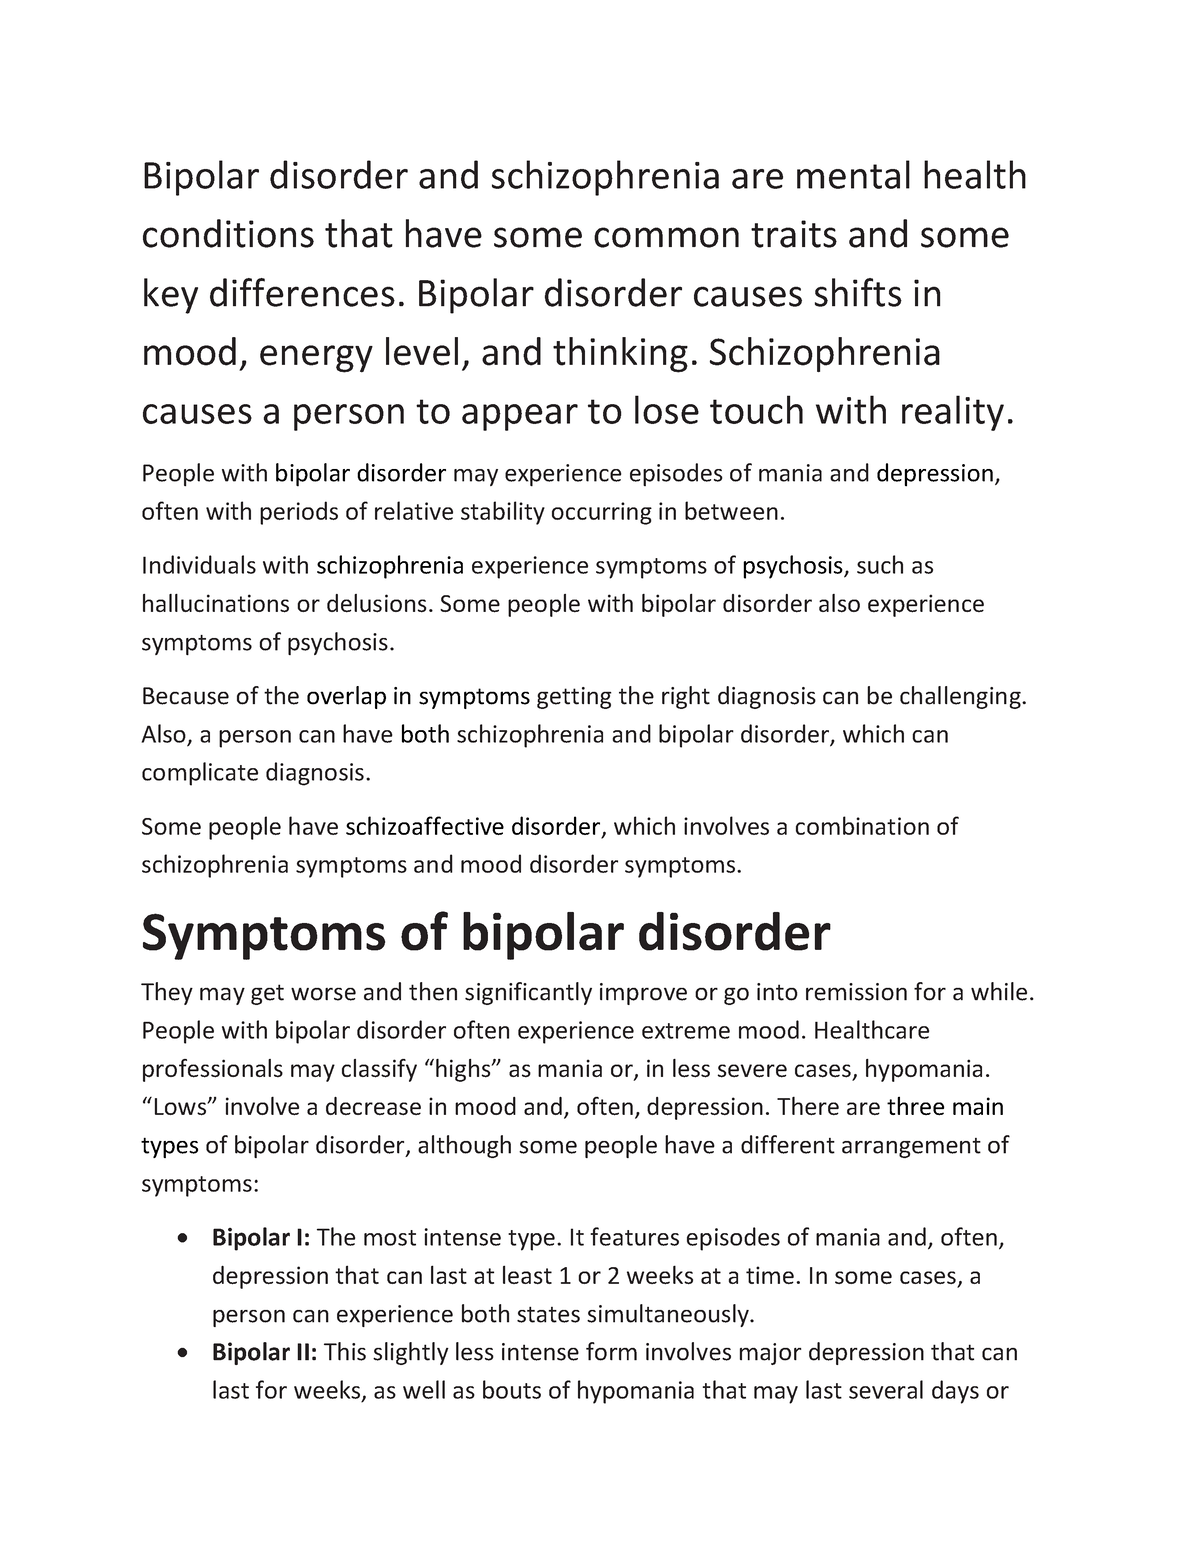 Bipolar Vs Schizophrenia Notes Bipolar Disorder And Schizophrenia Are Mental Health Conditions